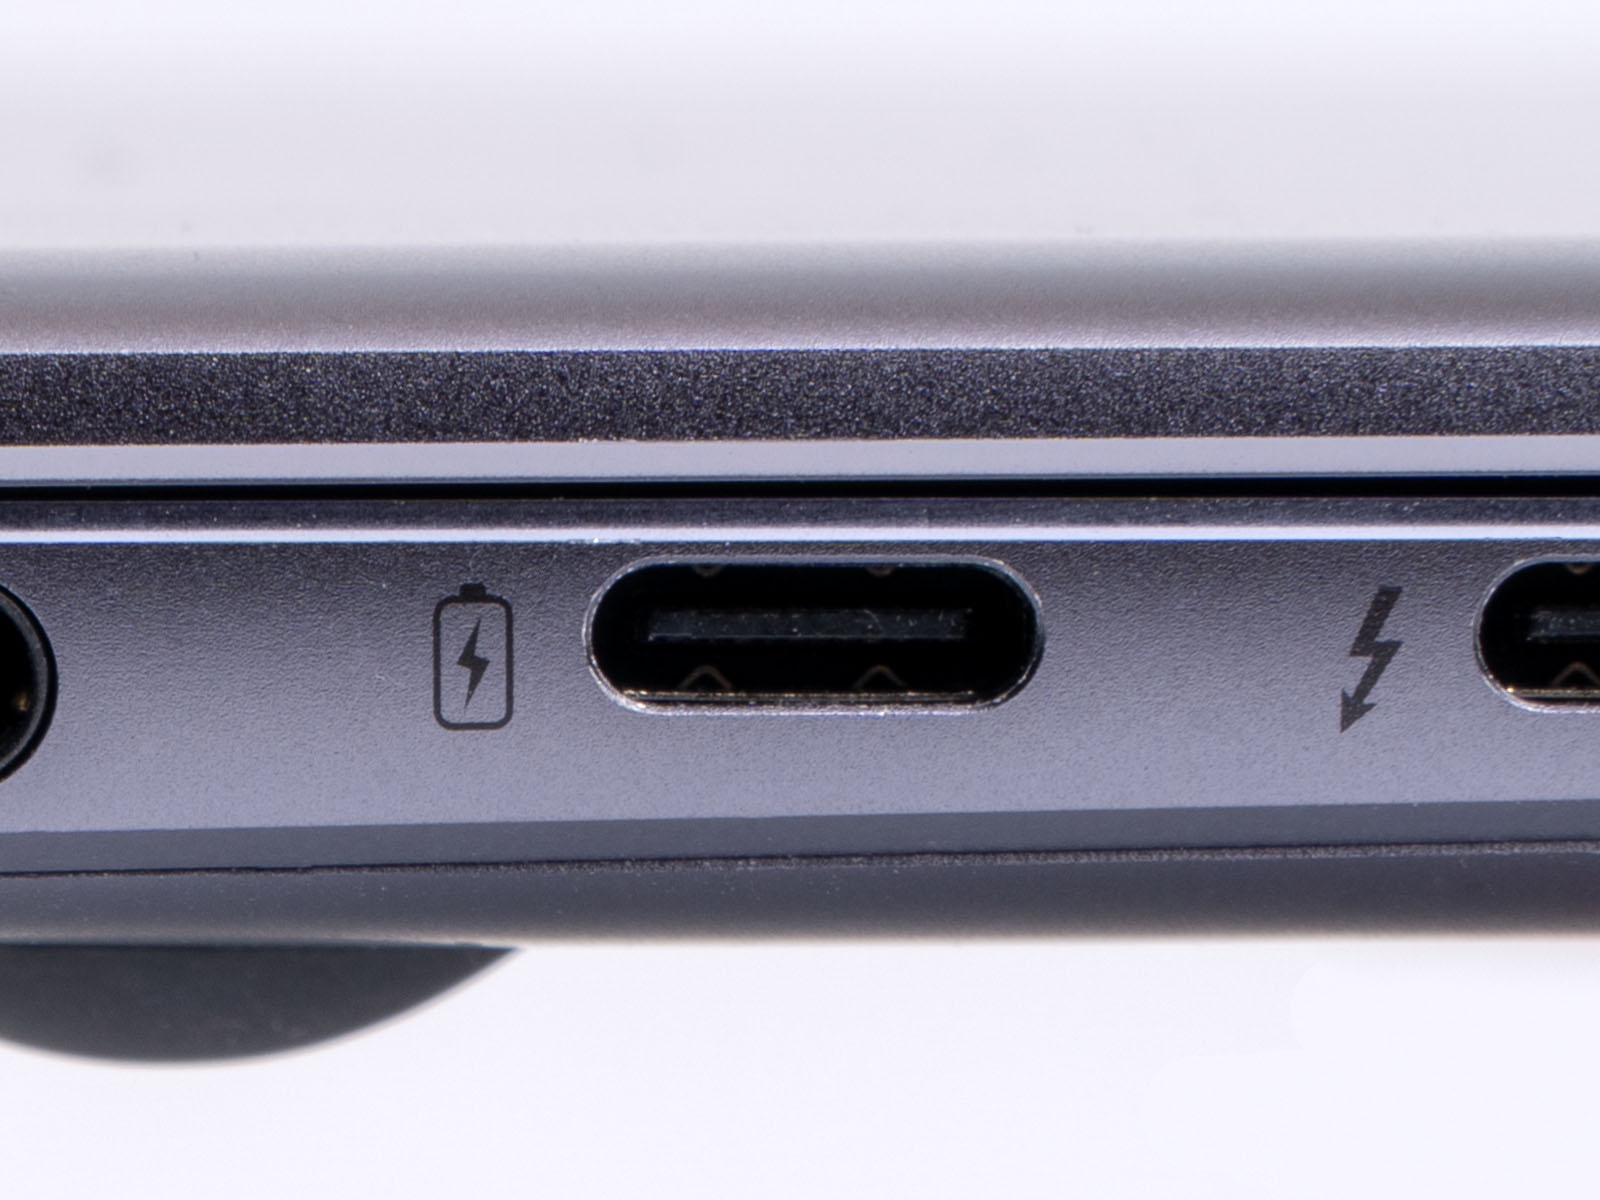 USB Type-Cポート。小さく、上下の向きがないリバーシブル仕様が特徴。モバイル機器にも実装しやすい （撮影：鈴木雅暢）